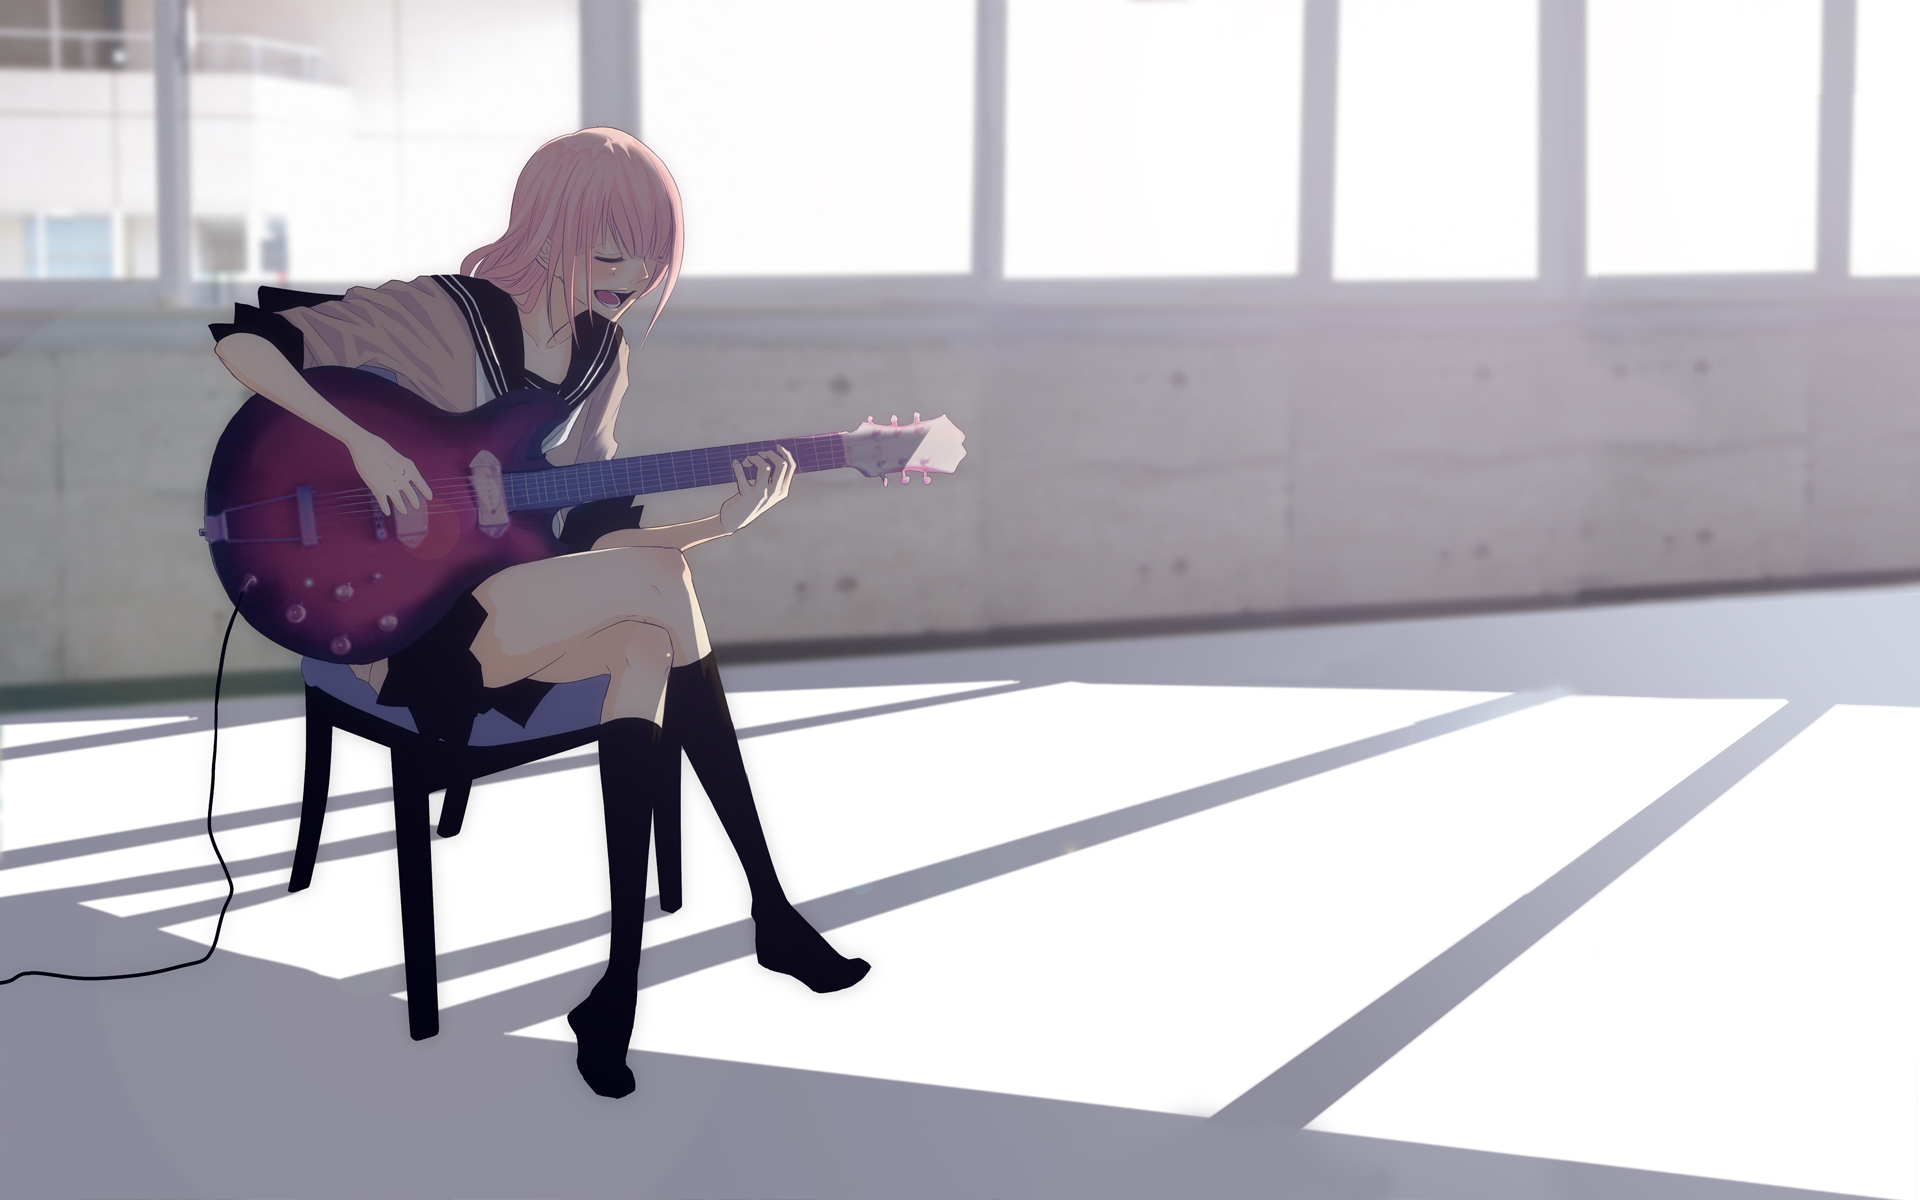 Ла ла я сижу песня. Девушка играет на электрогитаре референс. Человек сидит играет на гитаре референс. Девушка сидит на стуле референс.